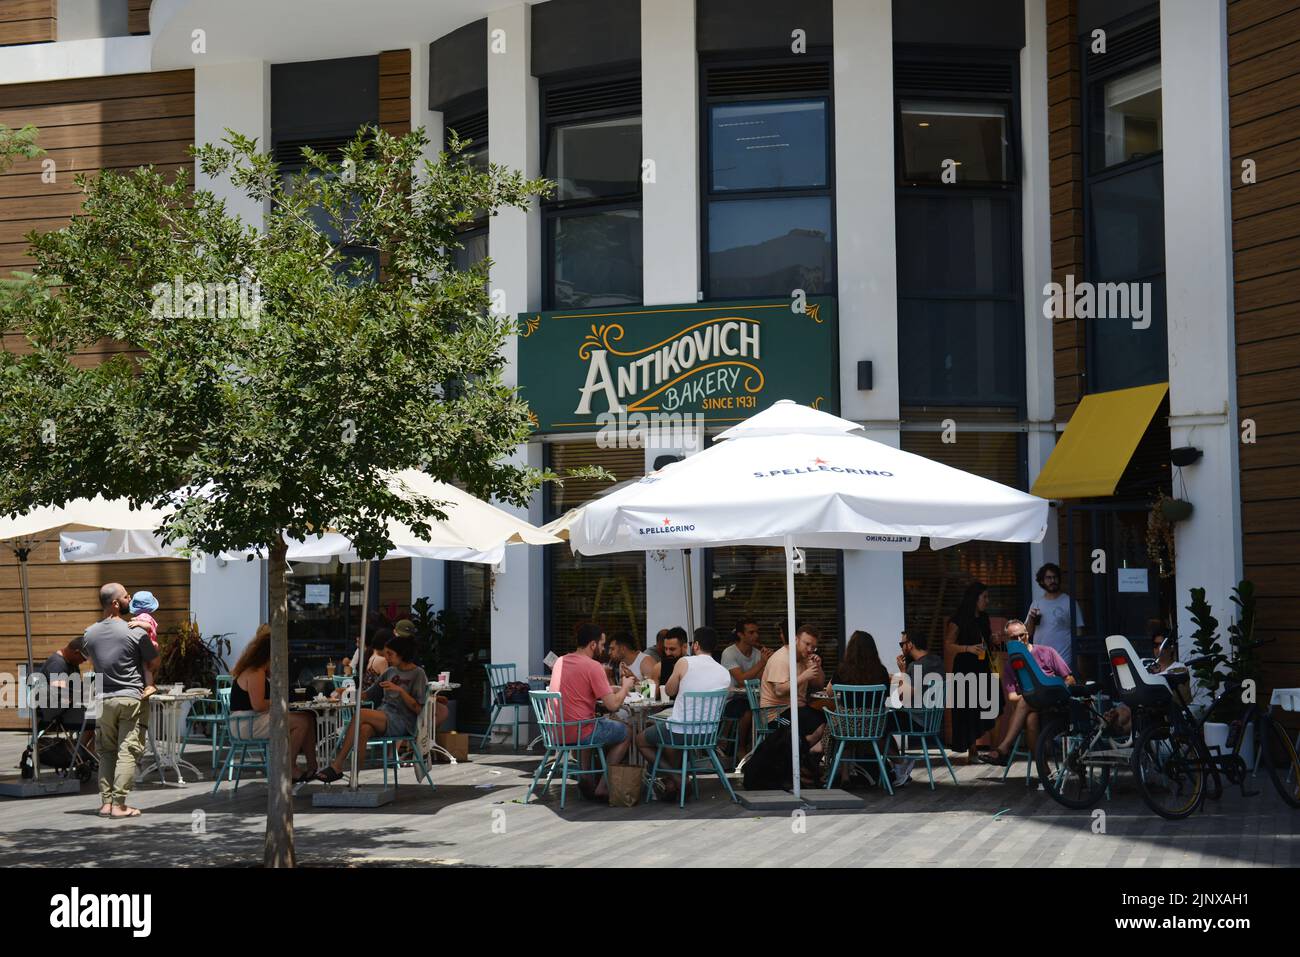 Bäckerei und Café Antikovich in der Nähe des Bezalel-Marktes in Tel-Aviv, Israel. Stockfoto